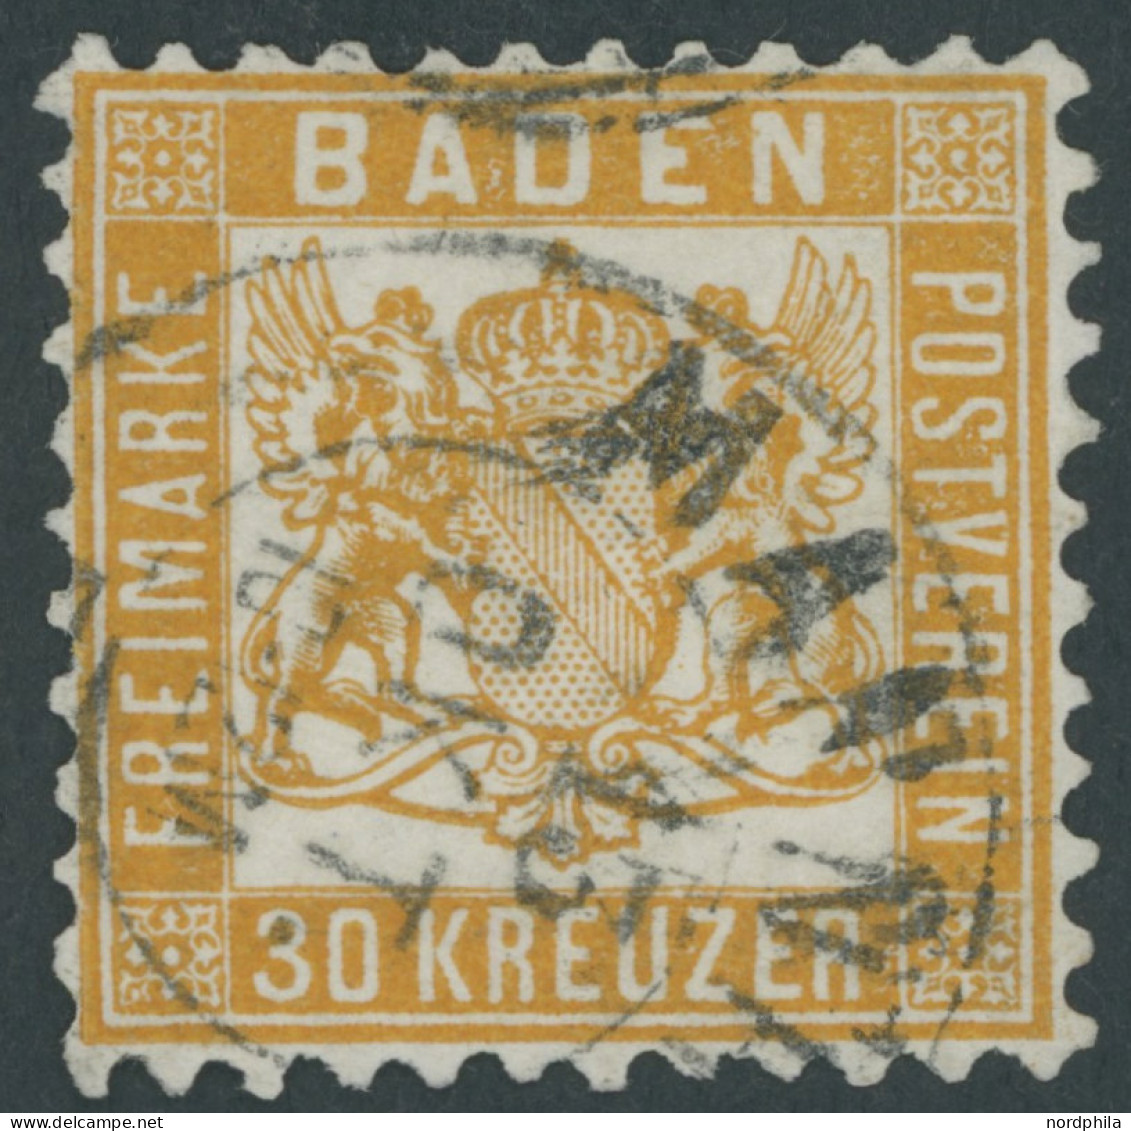 BADEN 22a O, 1862, 30 Kr. Lebhaftgelborange, Repariert Wie Pracht, Gepr. Brettl, Mi. (3200.-) - Usati